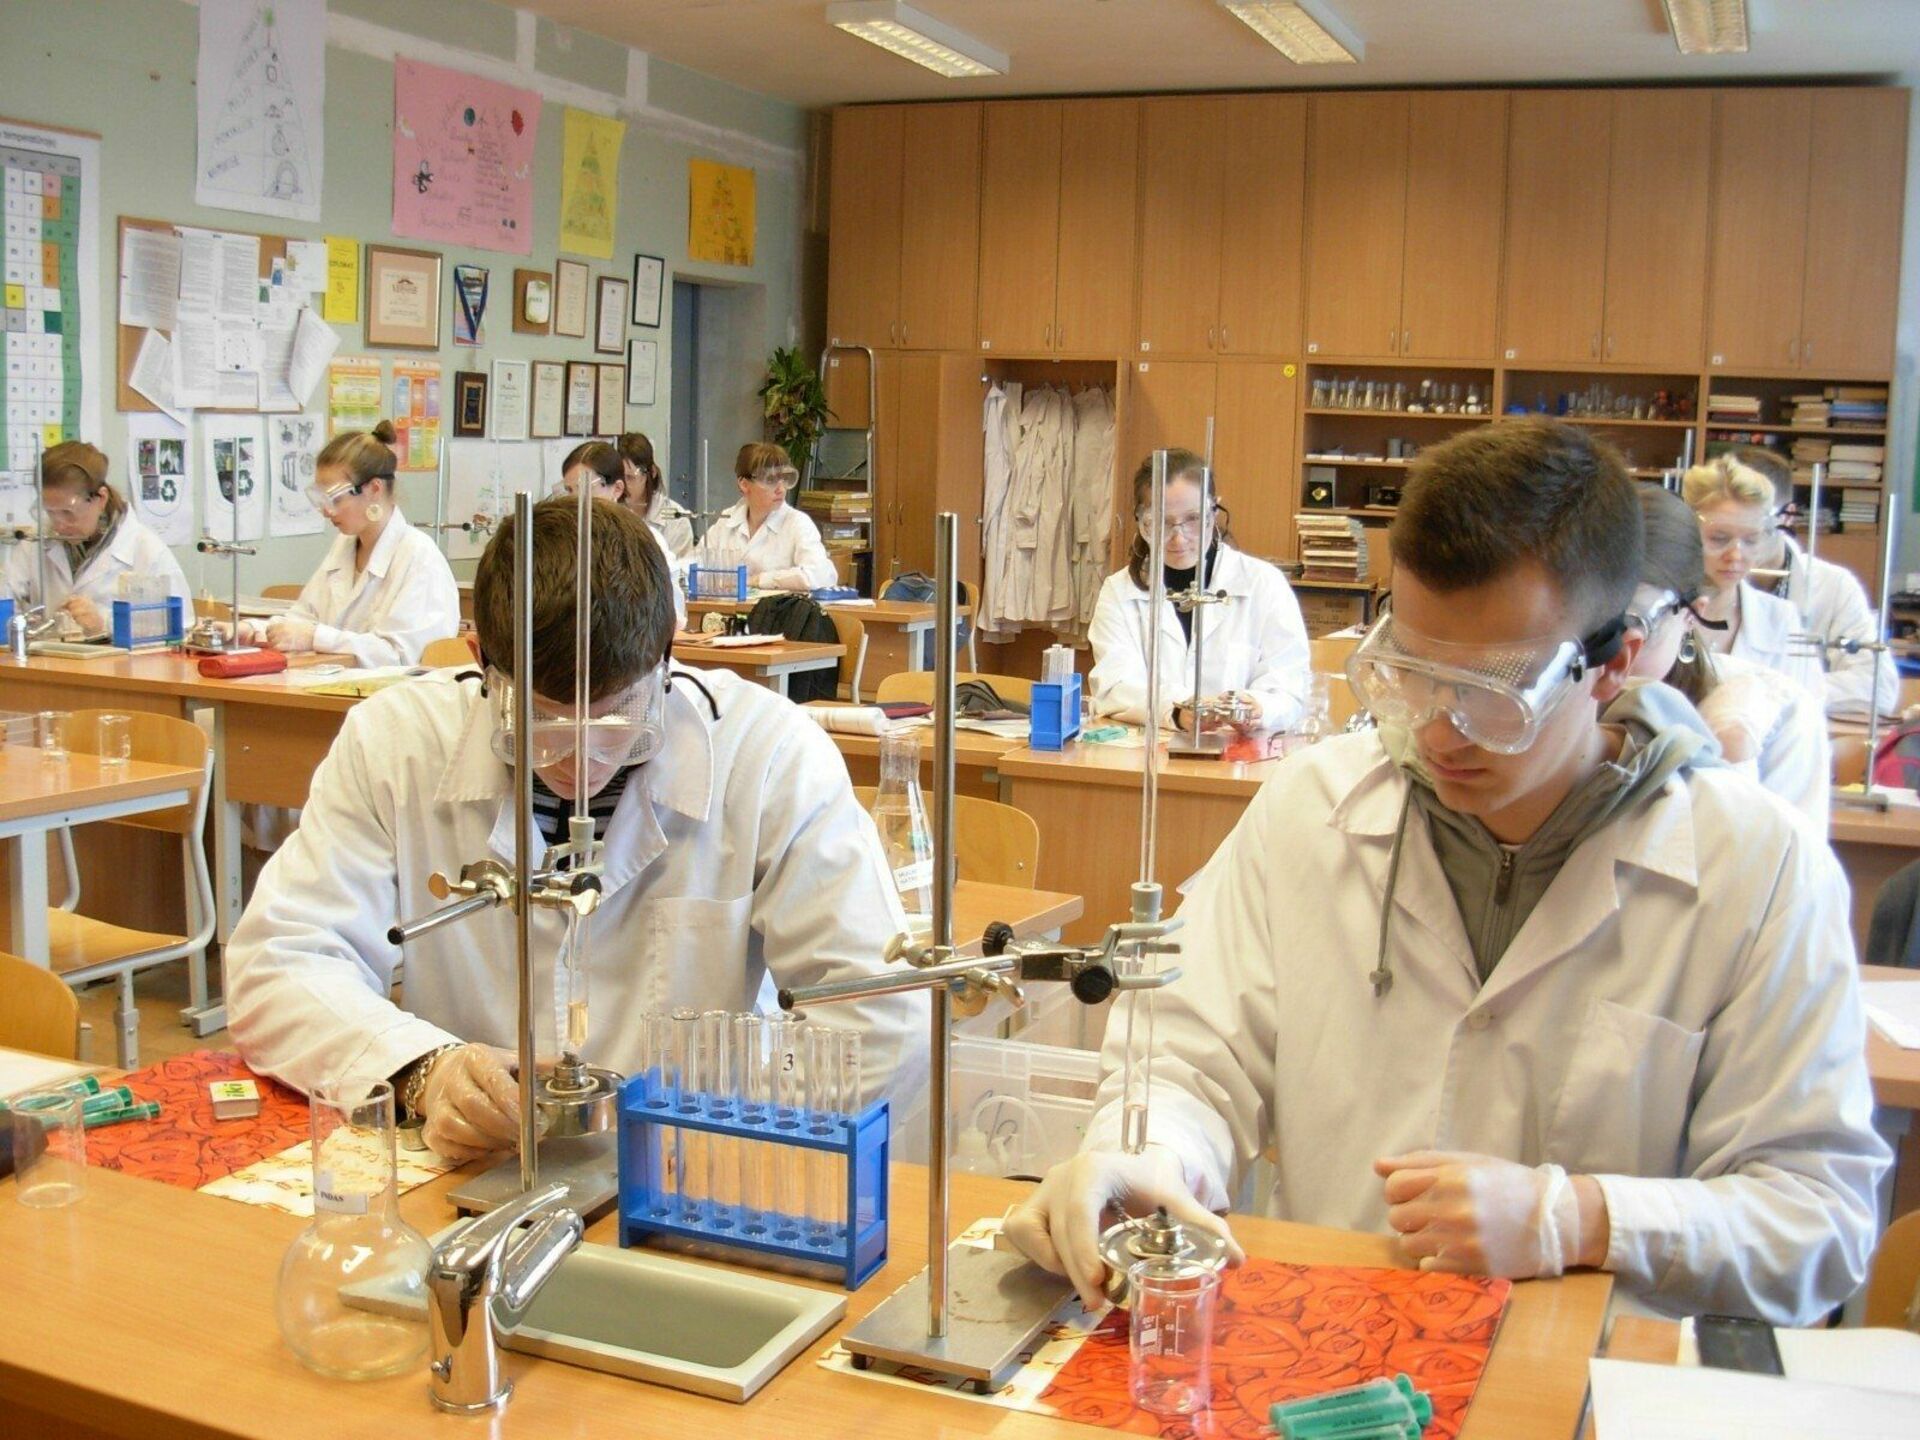 Клас химии. Урок химии. Урок химии в школе. Школьники на уроке химии. Лаборатория химии в школе.